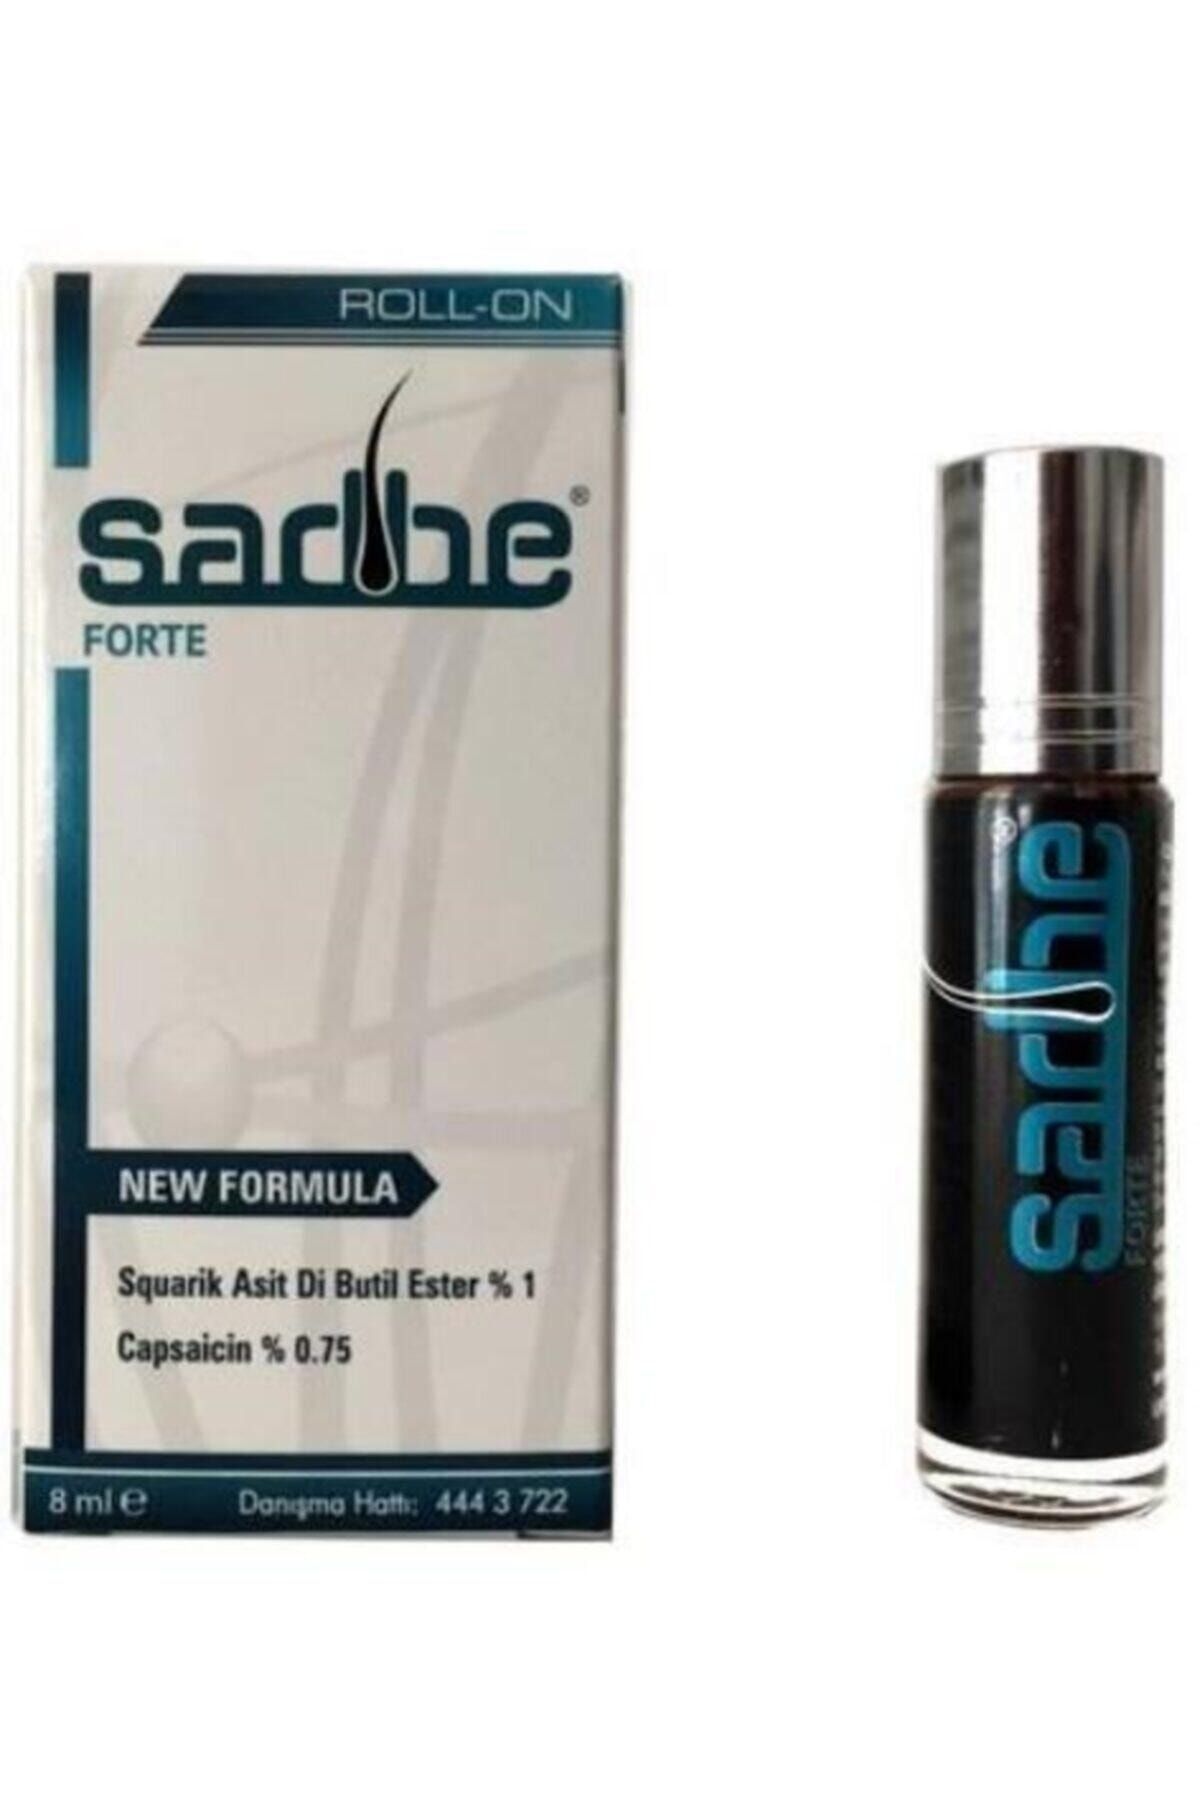 Hair Pharma Hp Sadbe Forte Roll-on 8ml